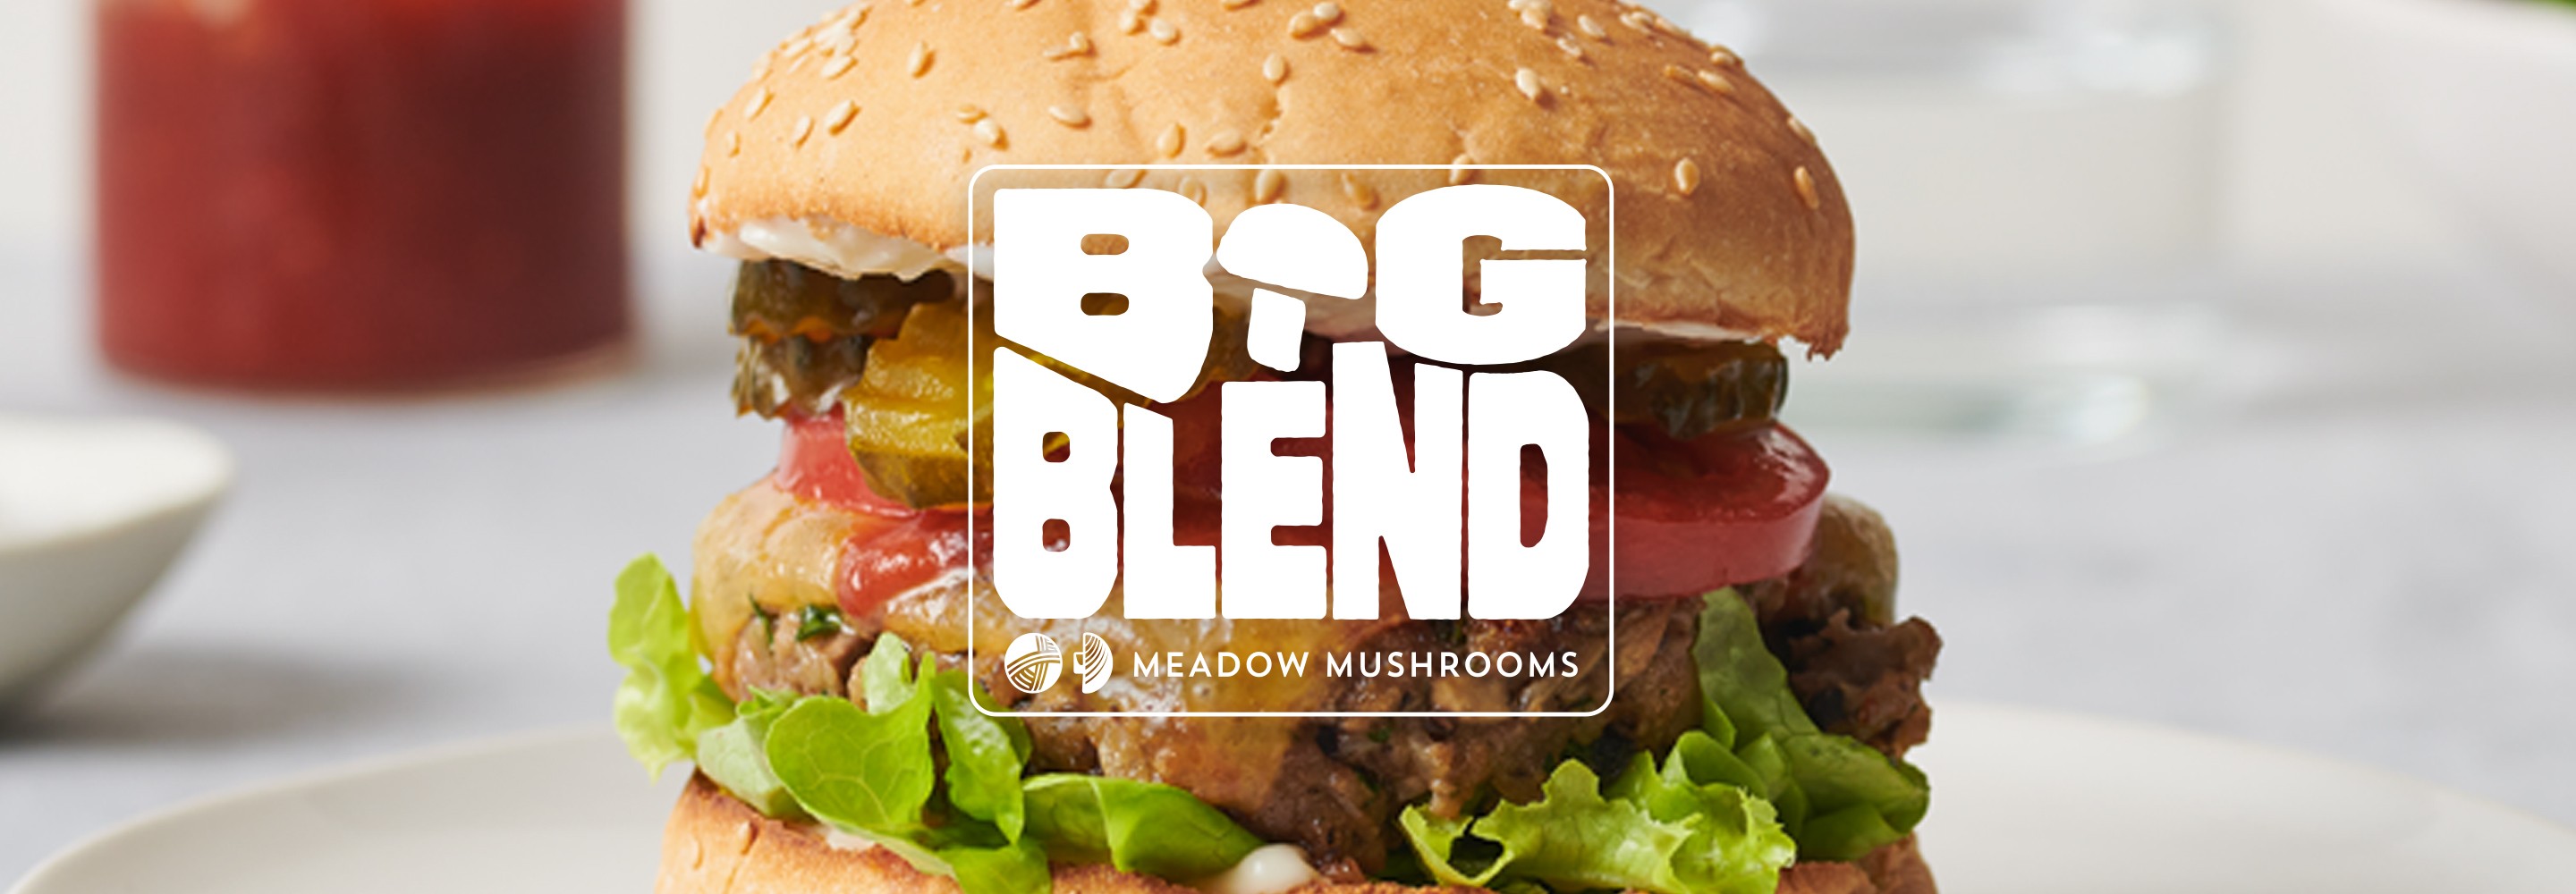 Meadow Mushrooms: Big Blend Banner